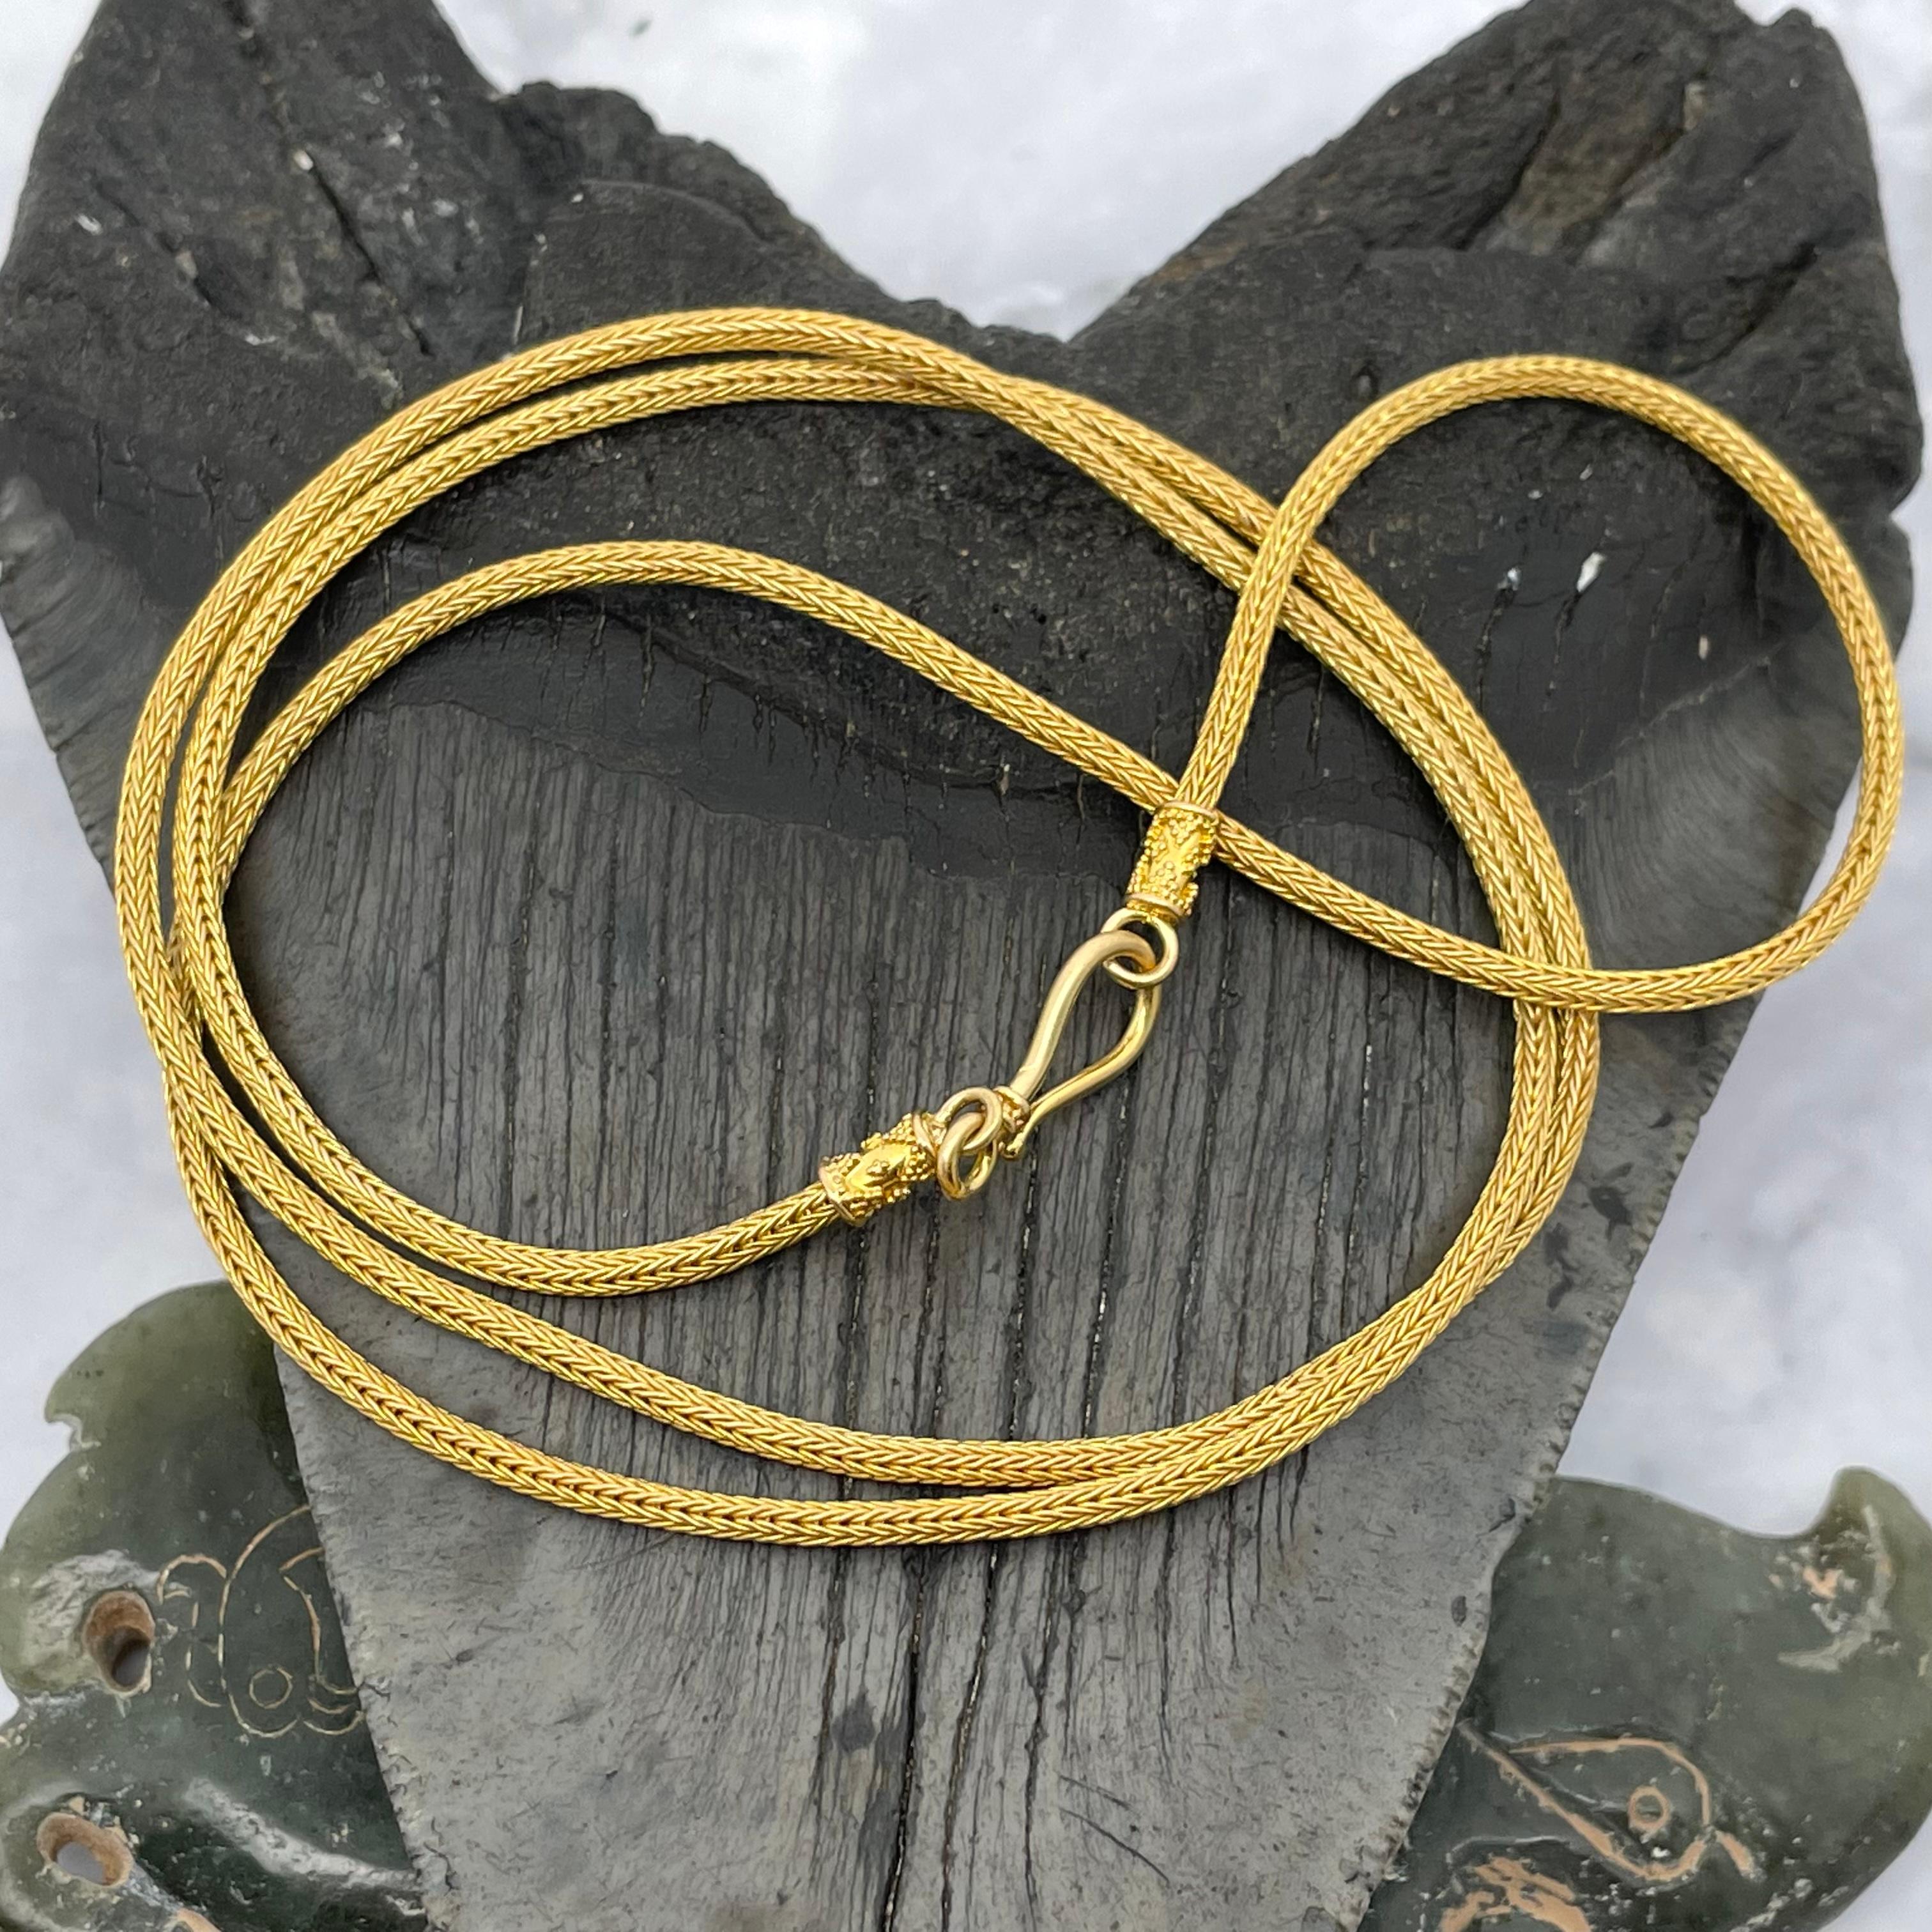 22k gold snake chain